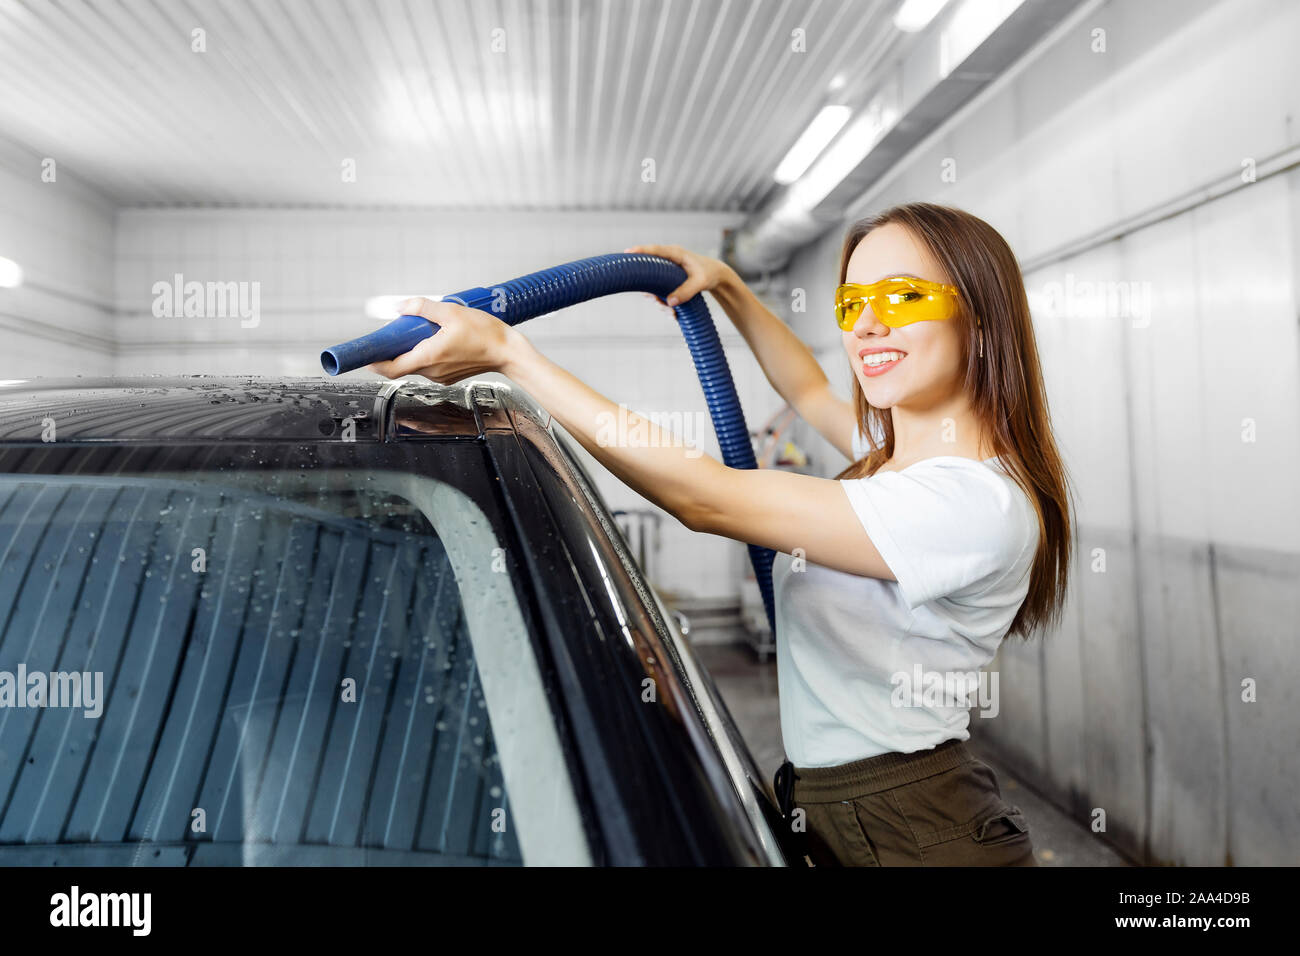 Mädchen Arbeiter verwendet Turbo Trockner Tropfen Wasser zu entfernen.  Service Auto waschen Stockfotografie - Alamy